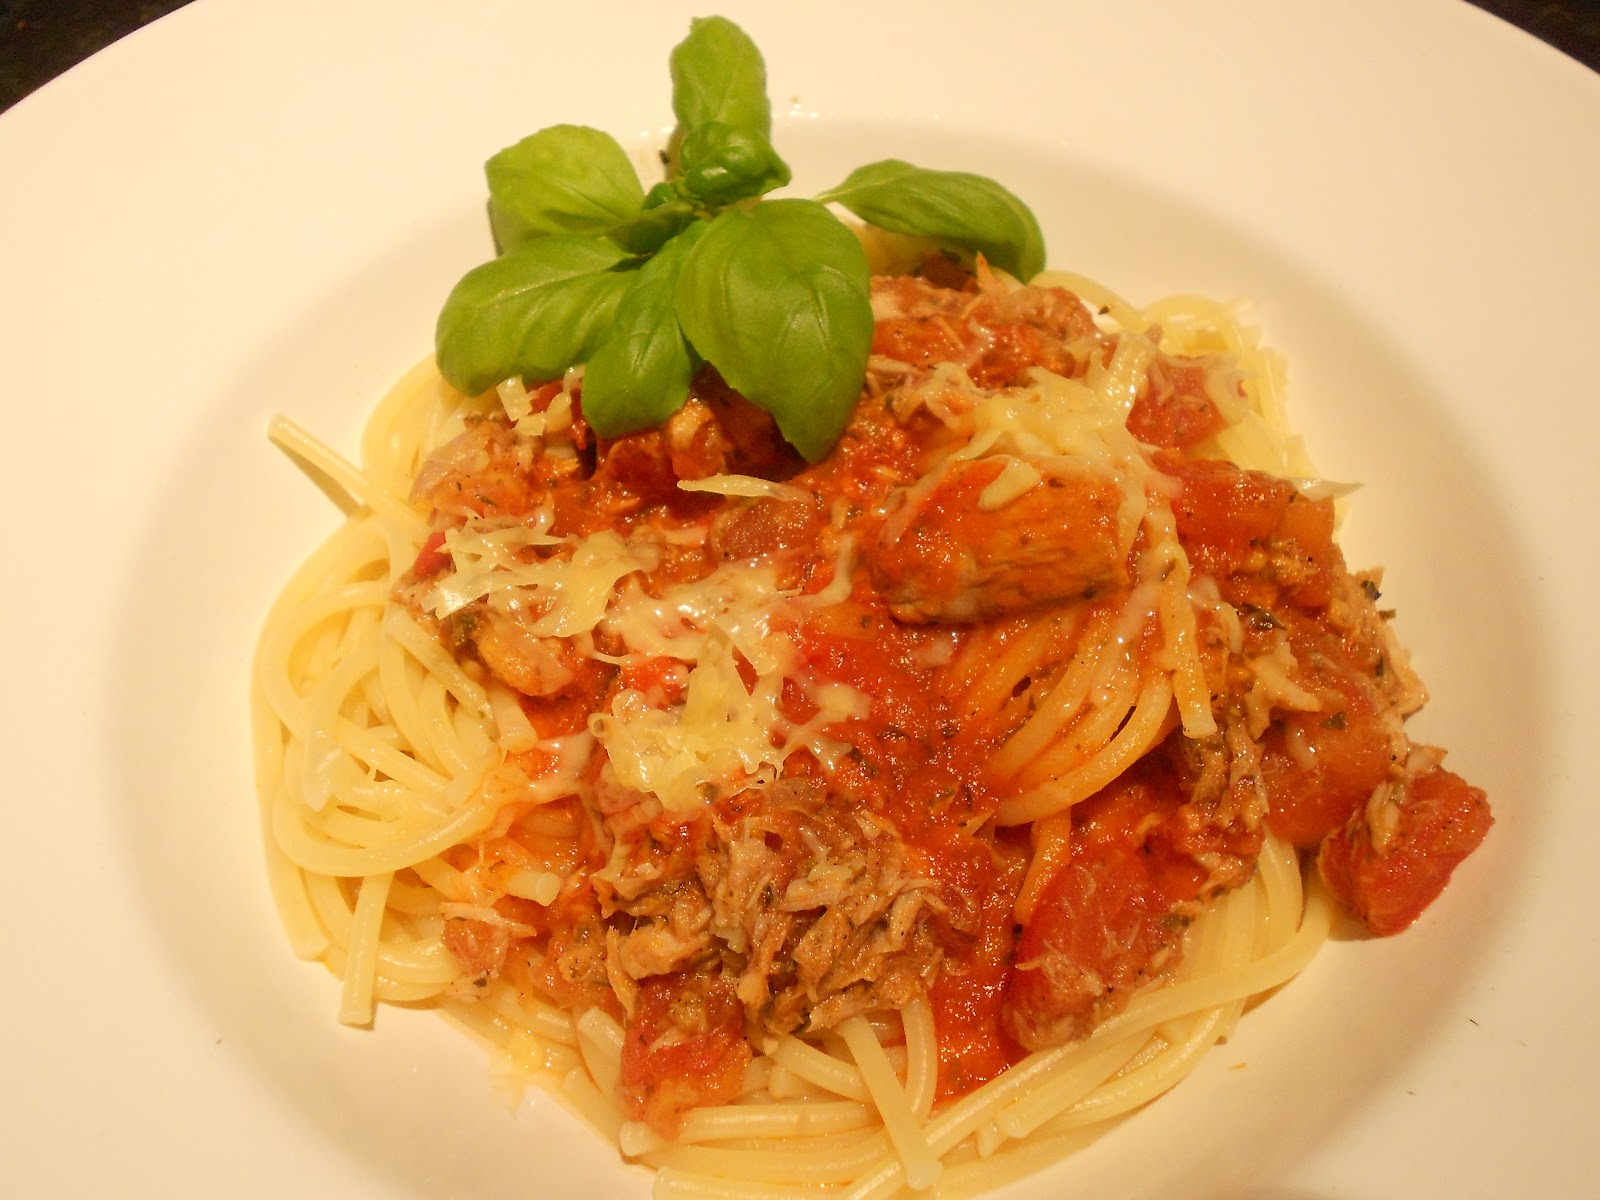 Verboten gut ⚠: Spaghetti al tonno